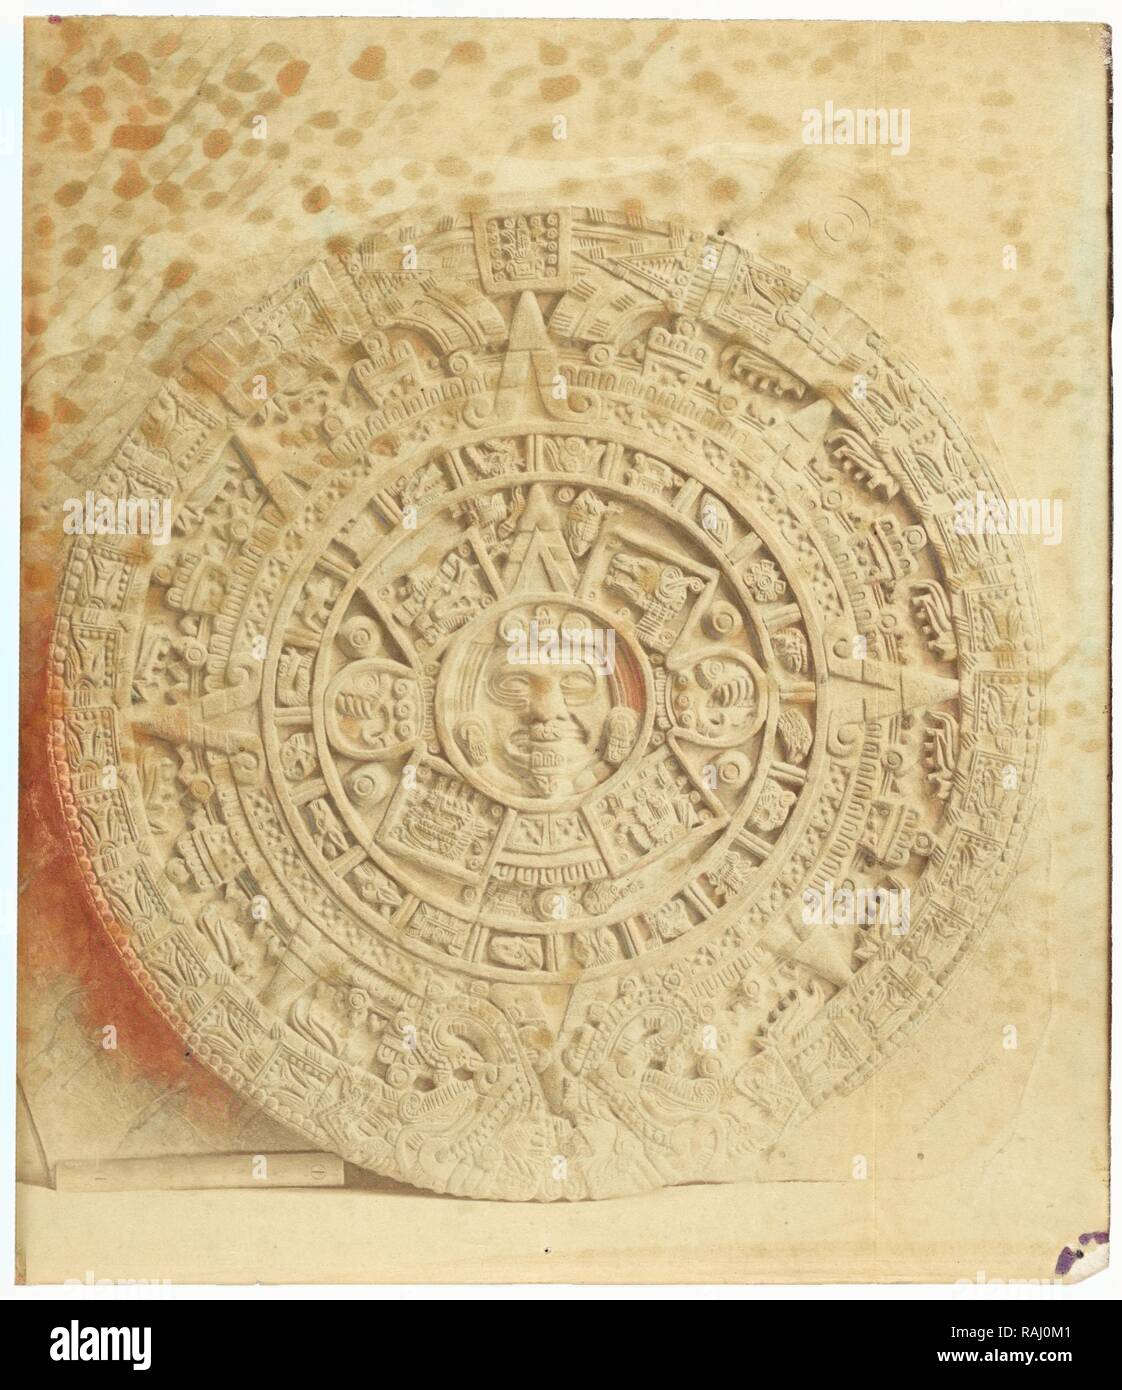 Abadiano's cast of the Aztec calendar stone, Estudio arqueológico y jeroglífico del Calendario ó gran libro reimagined Stock Photo